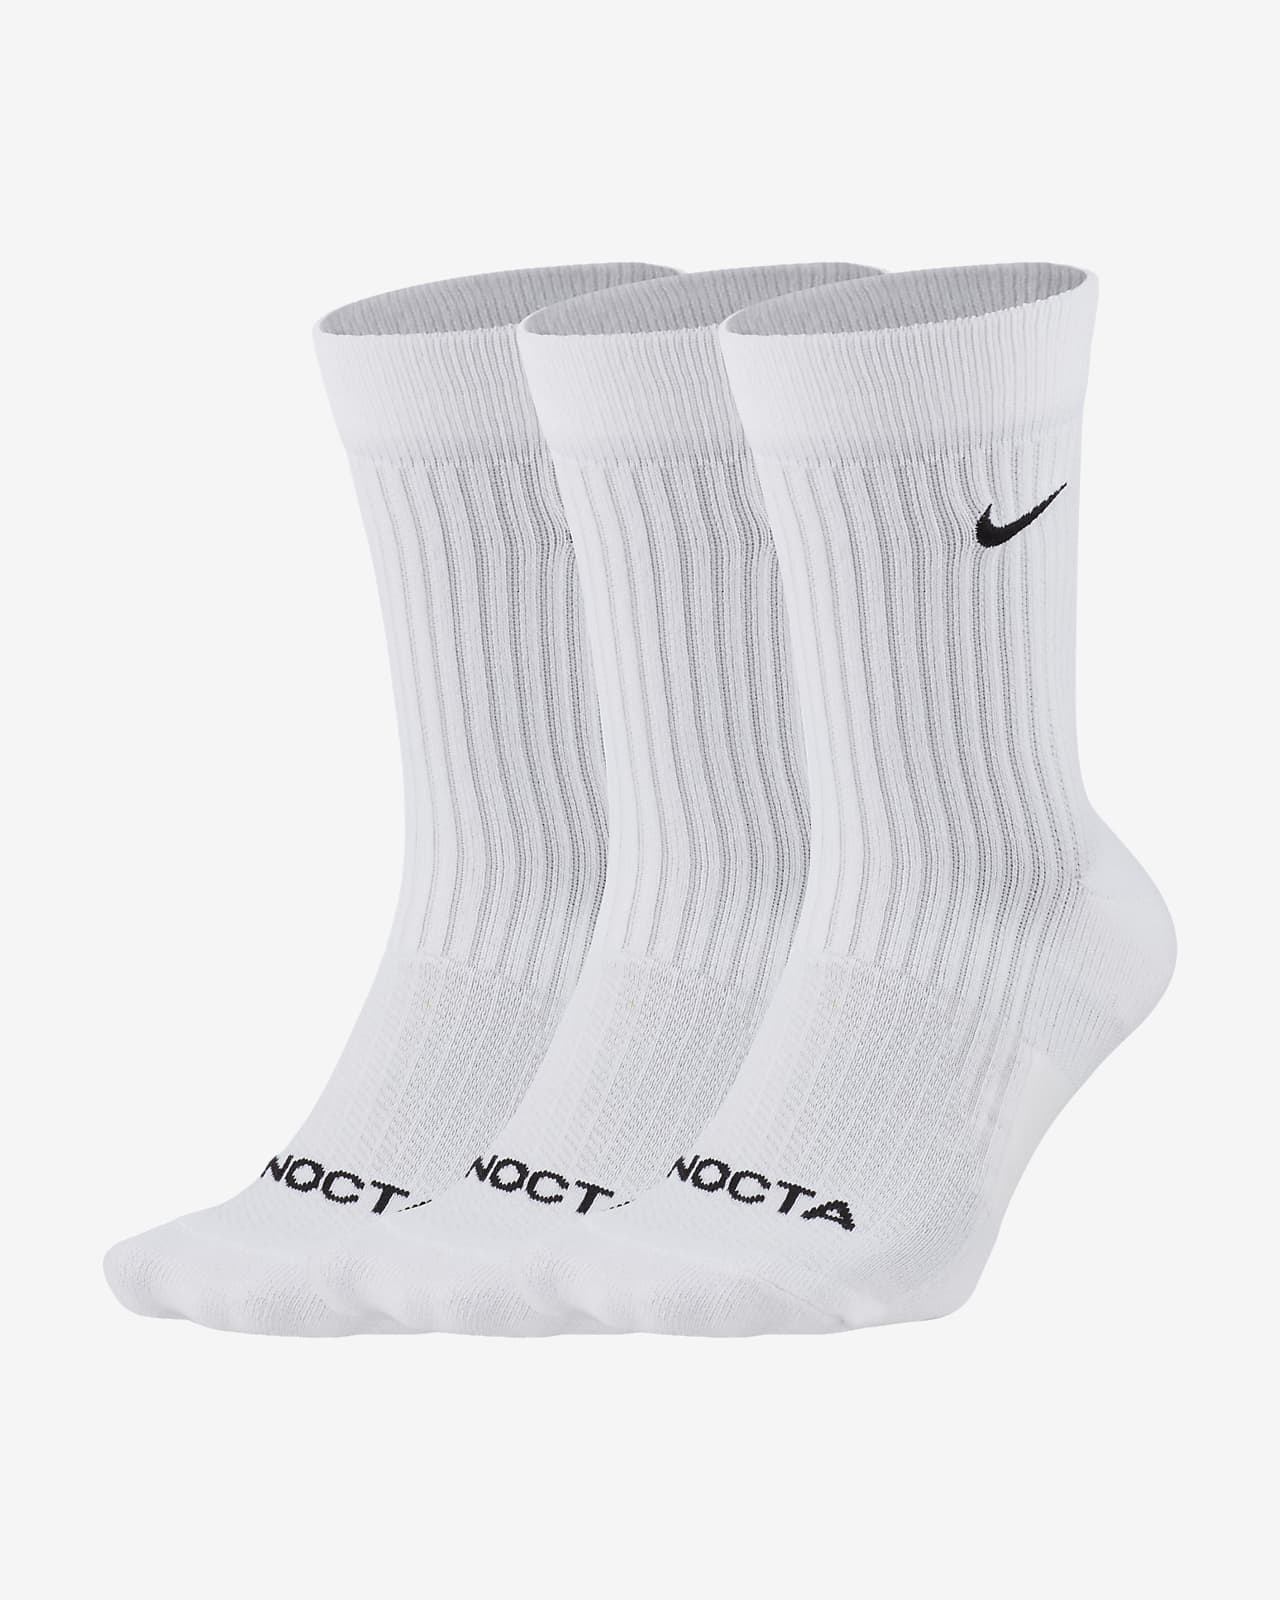 NOCTA Crew Socks (3 Pairs)